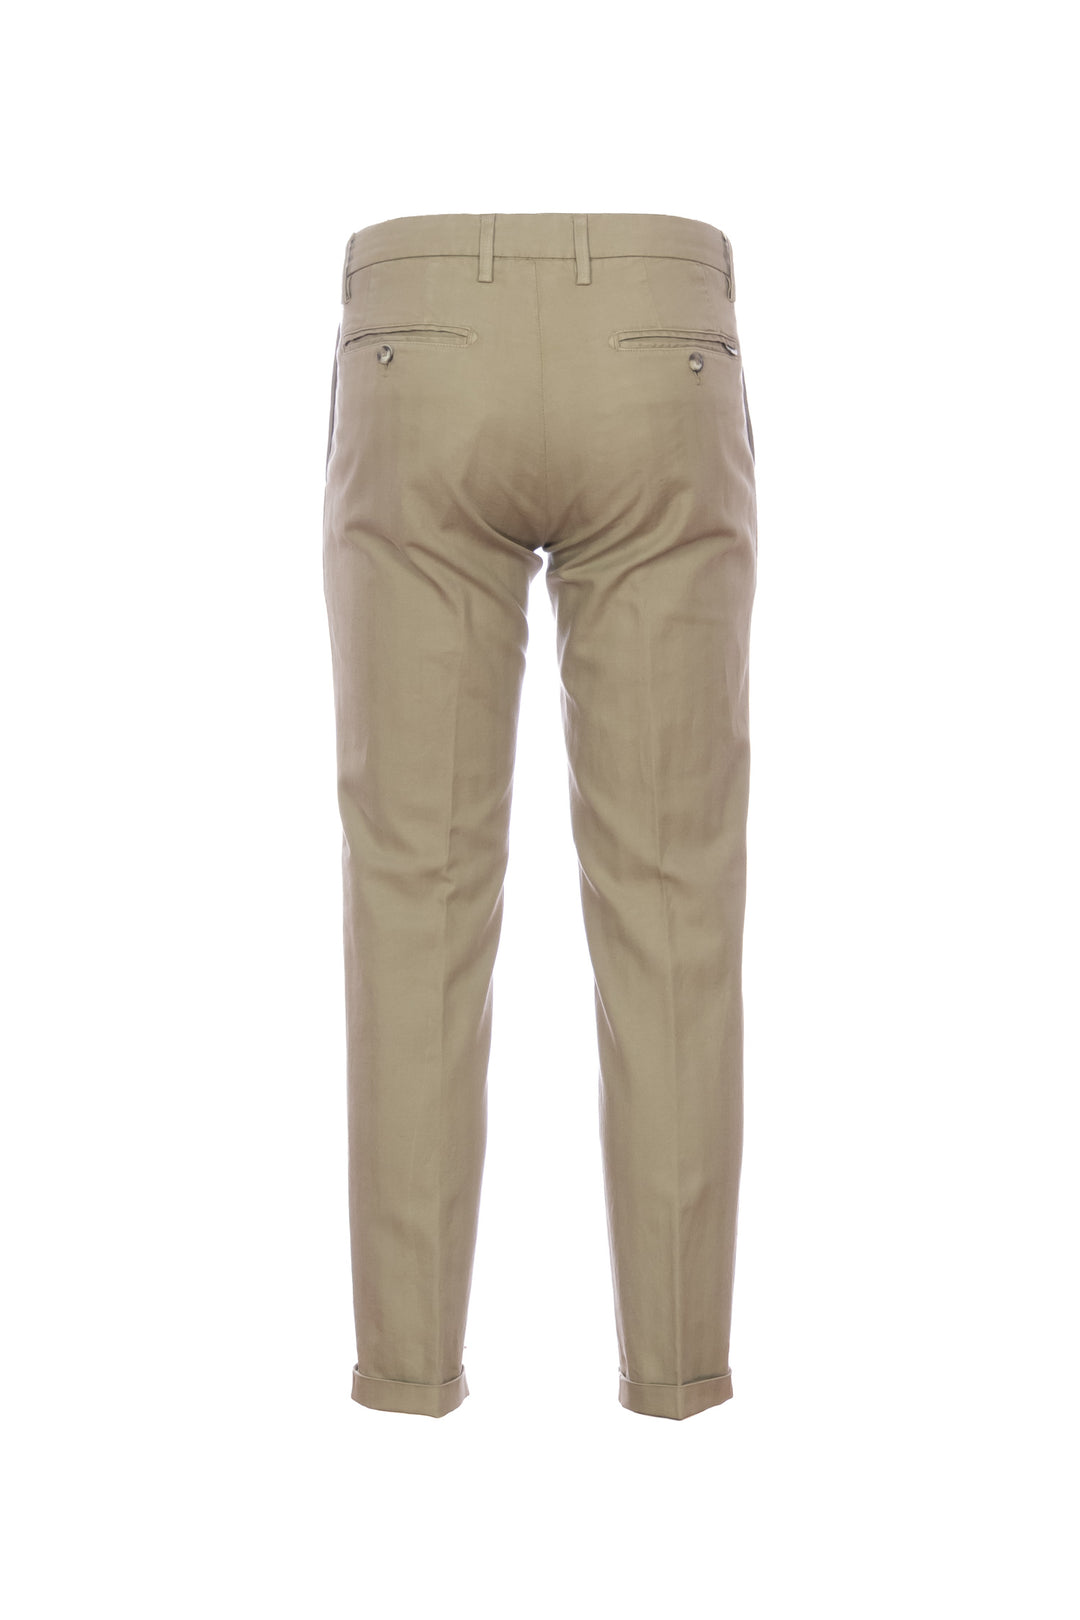 RE-HASH Pantalone chinos “MUCHA-P1C” sabbia a righe in cotone e lino con risvolto - Mancinelli 1954